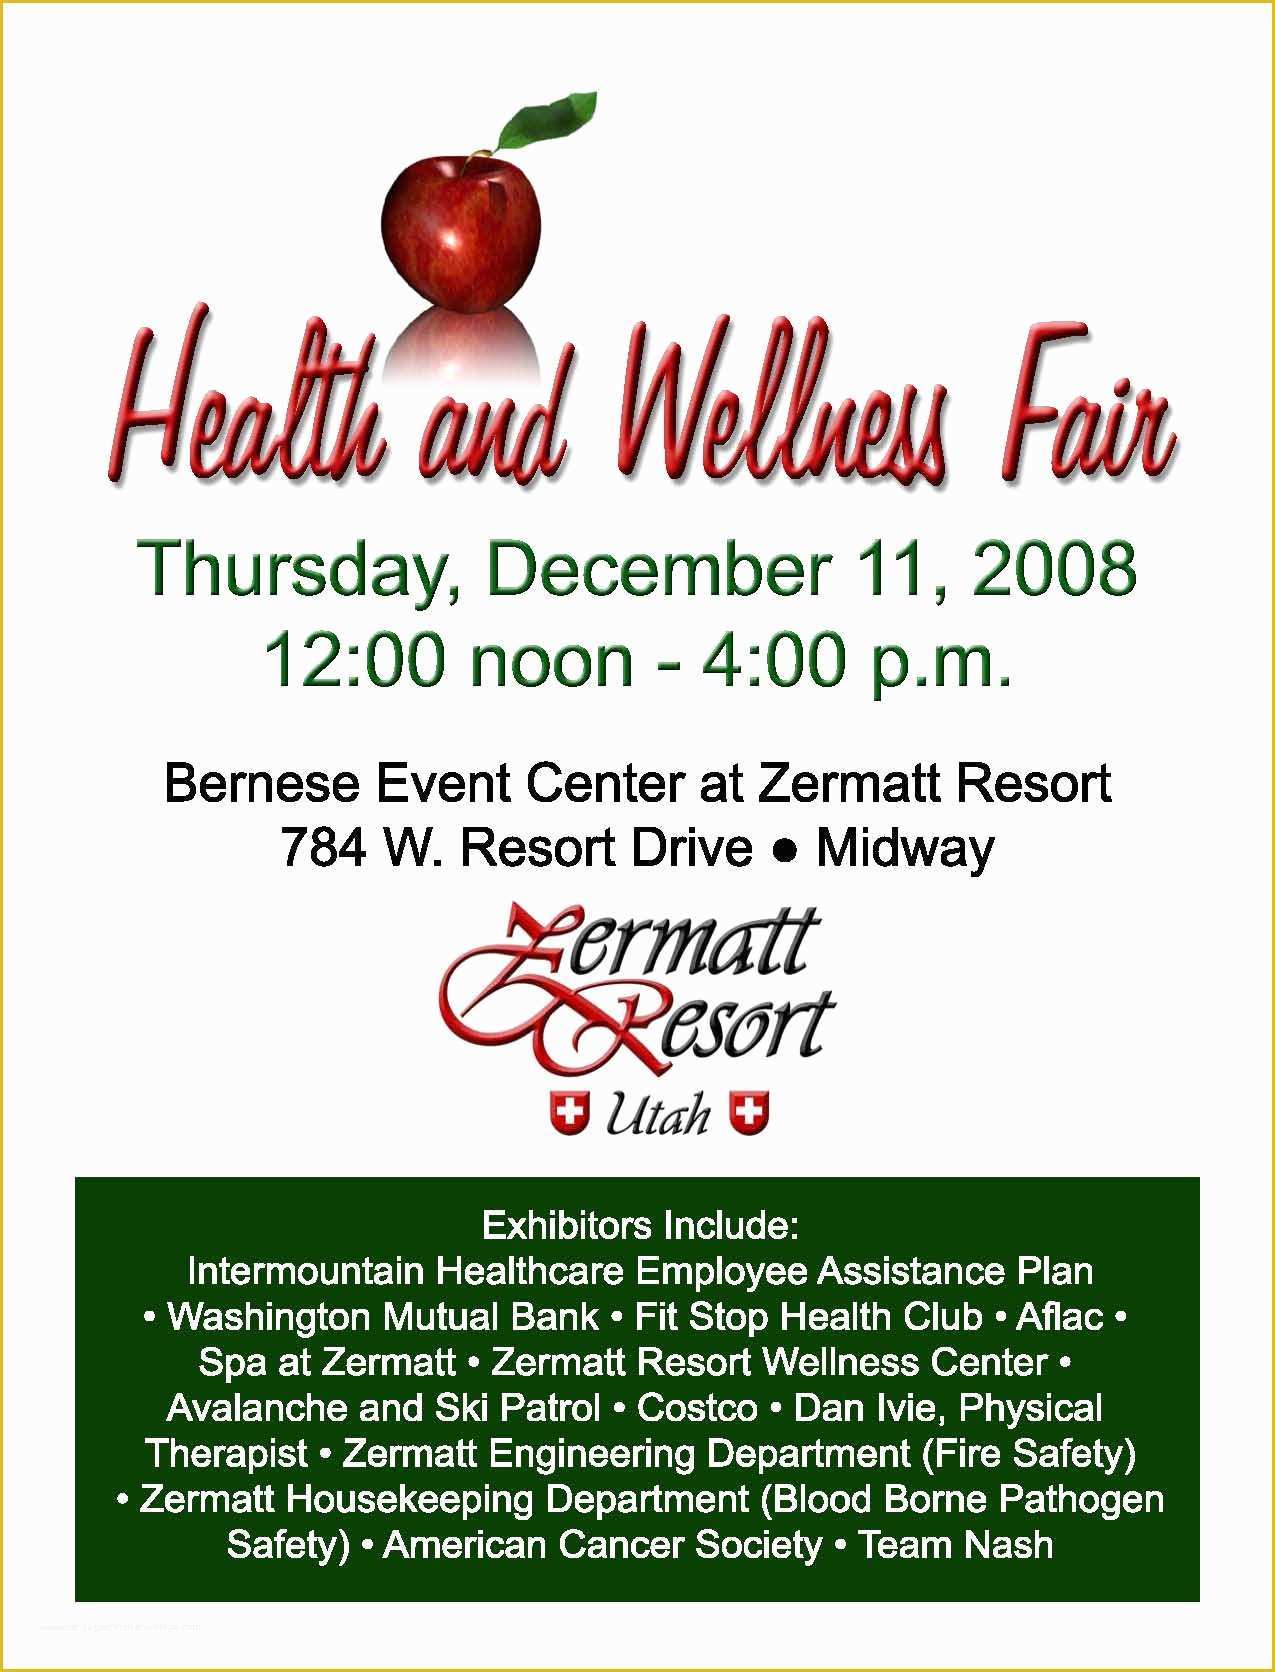 Health Fair Flyer Template Free Of Health and Wellness Fair at Zermatt Resort